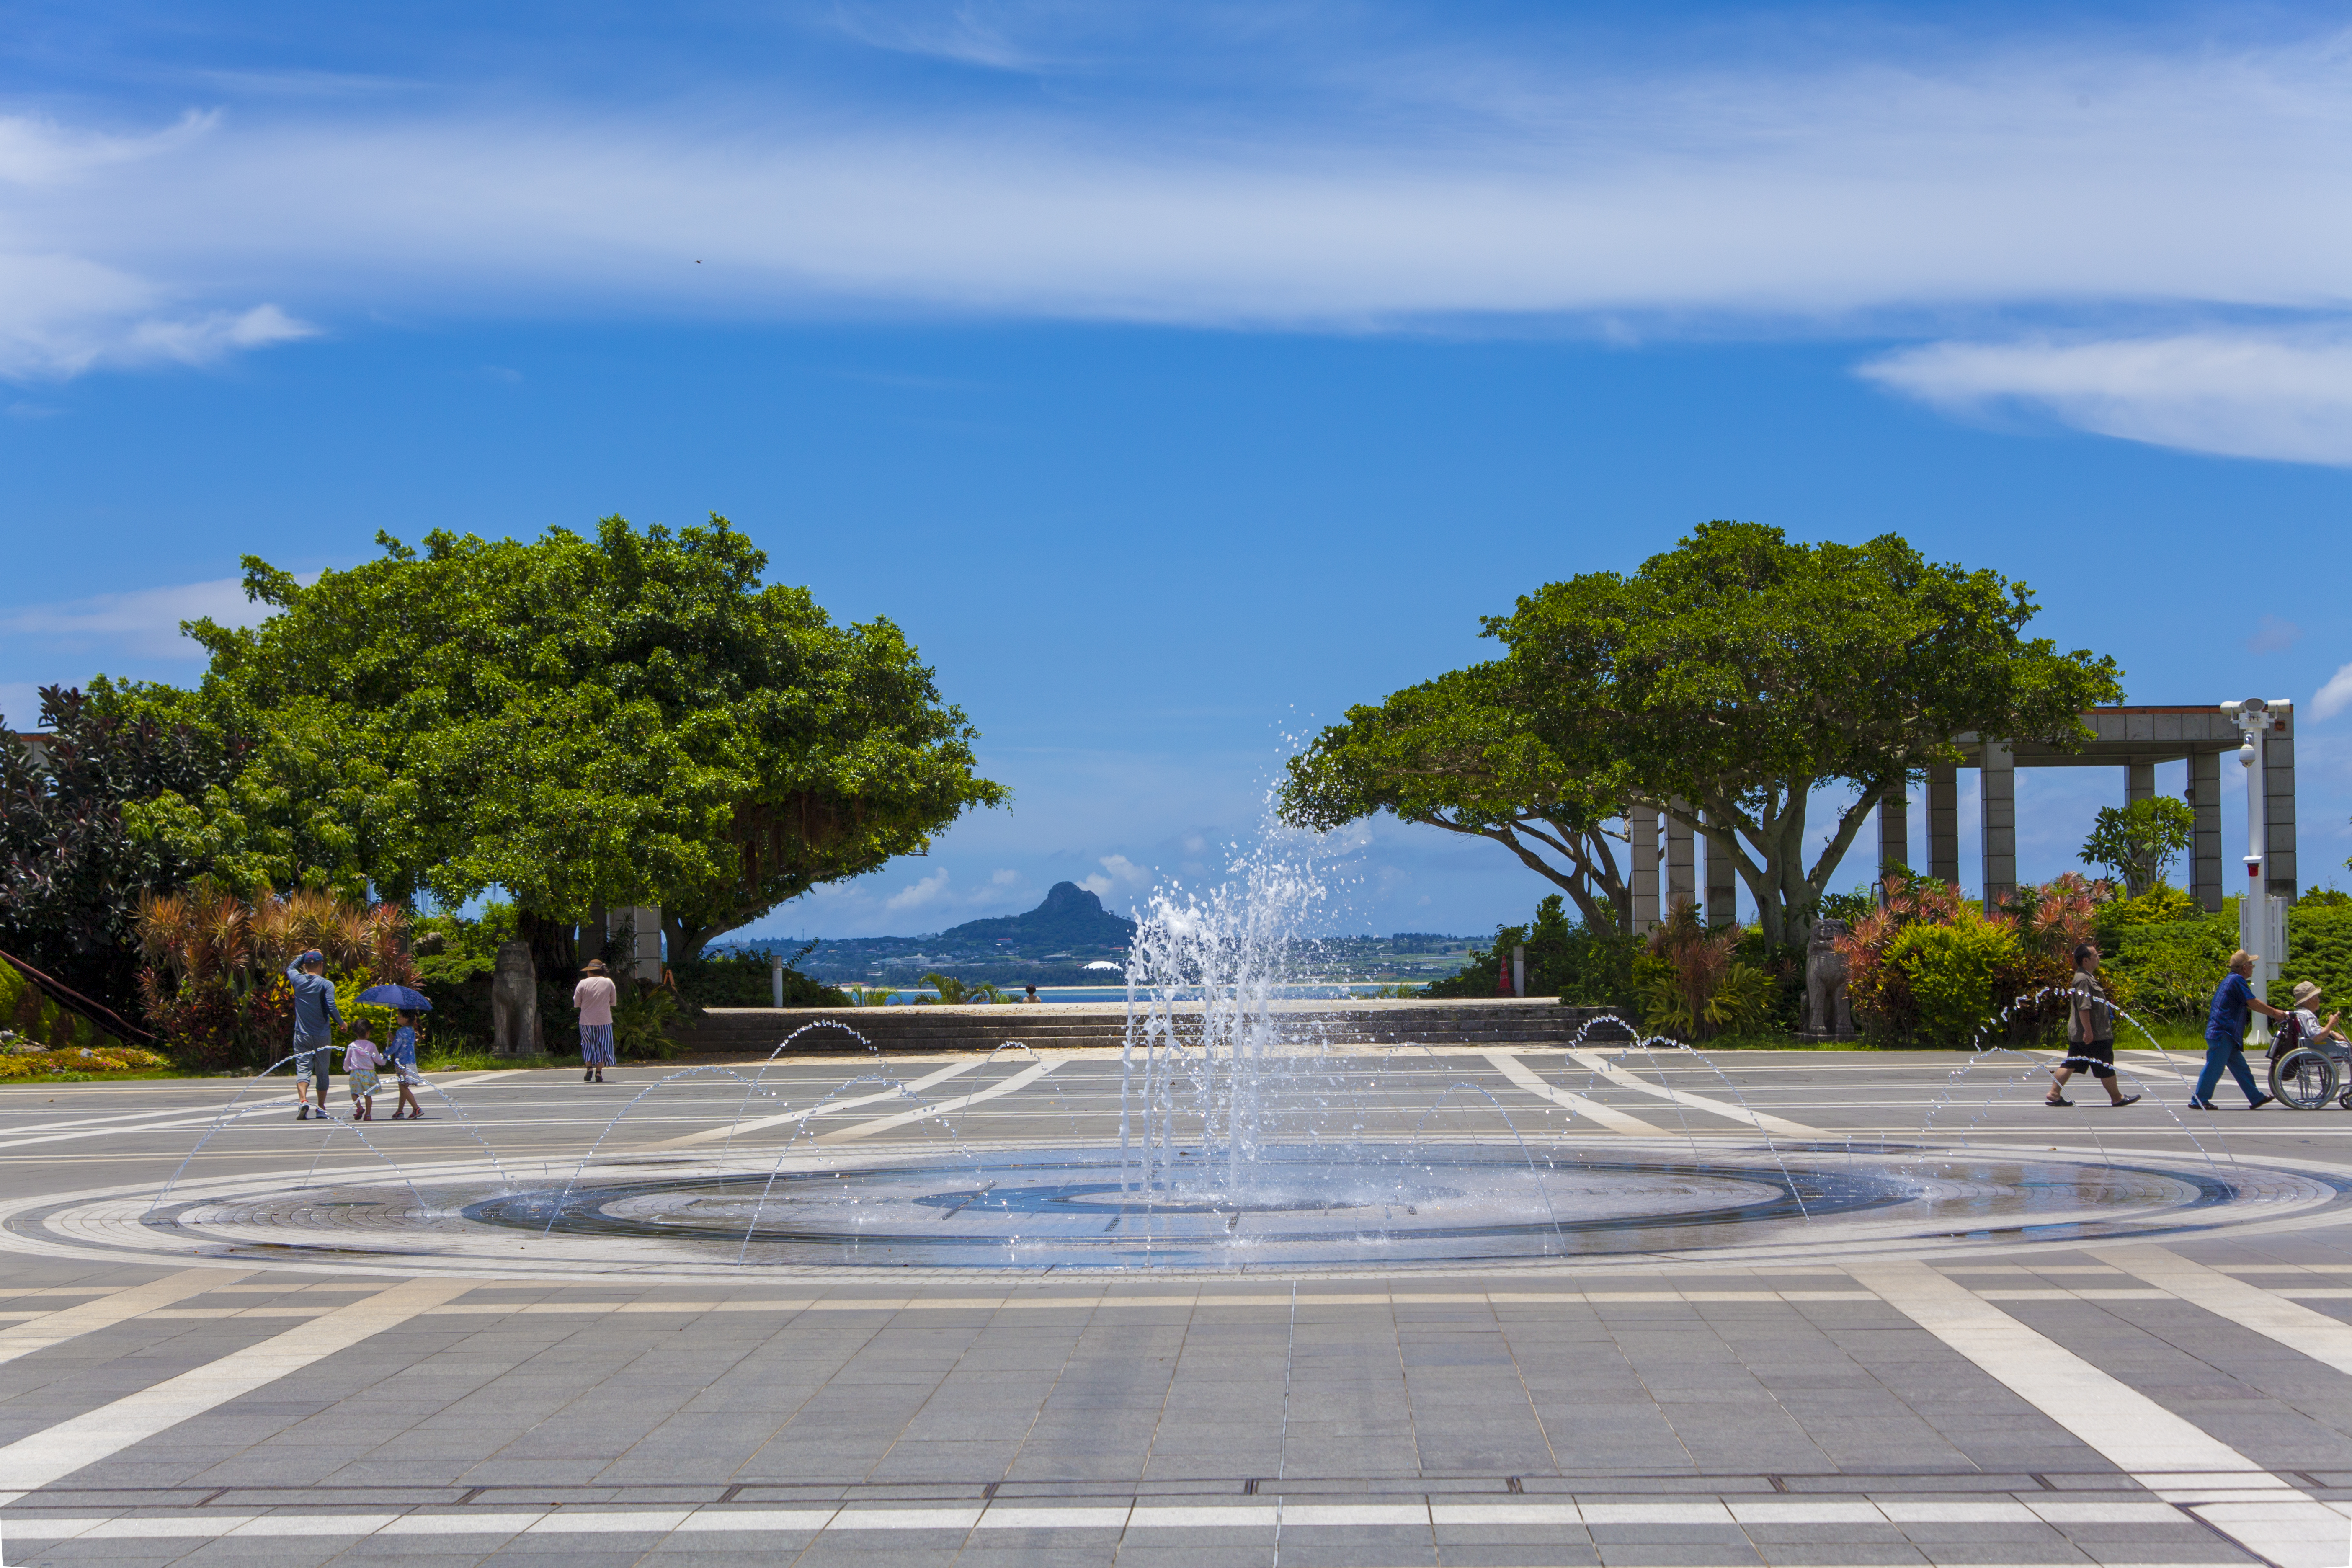 海洋博公園 噴水 横 No 1138 沖縄のフリー写真素材サイト ばんない堂